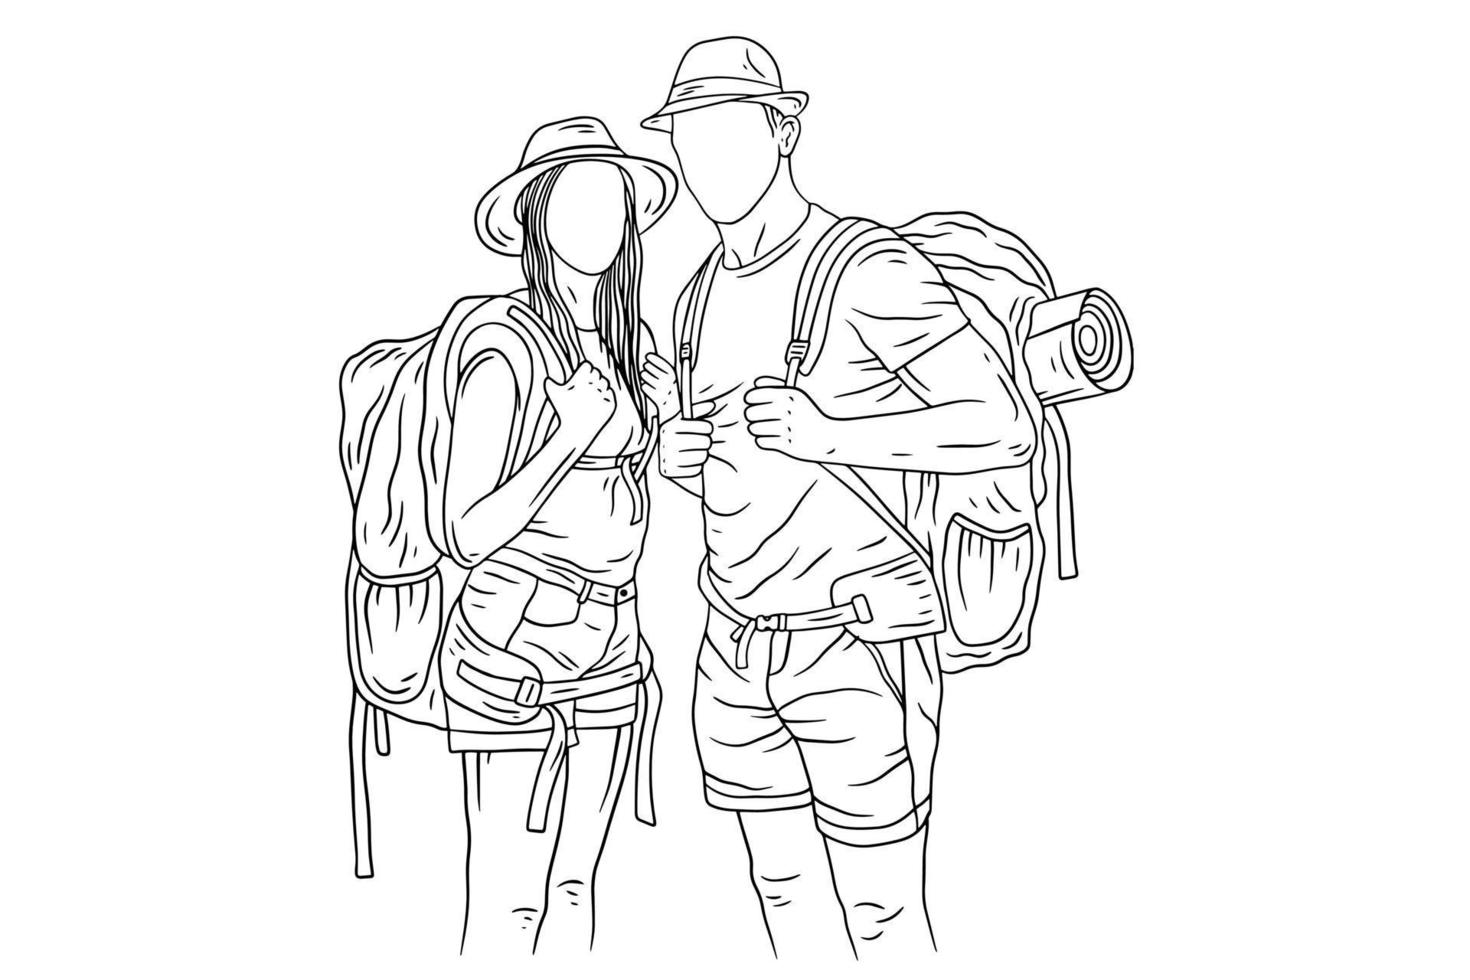 coppia felice avventura esplorare viaggio alpinista campeggio romanticismo viaggio sport linea arte disegnata a mano vettore